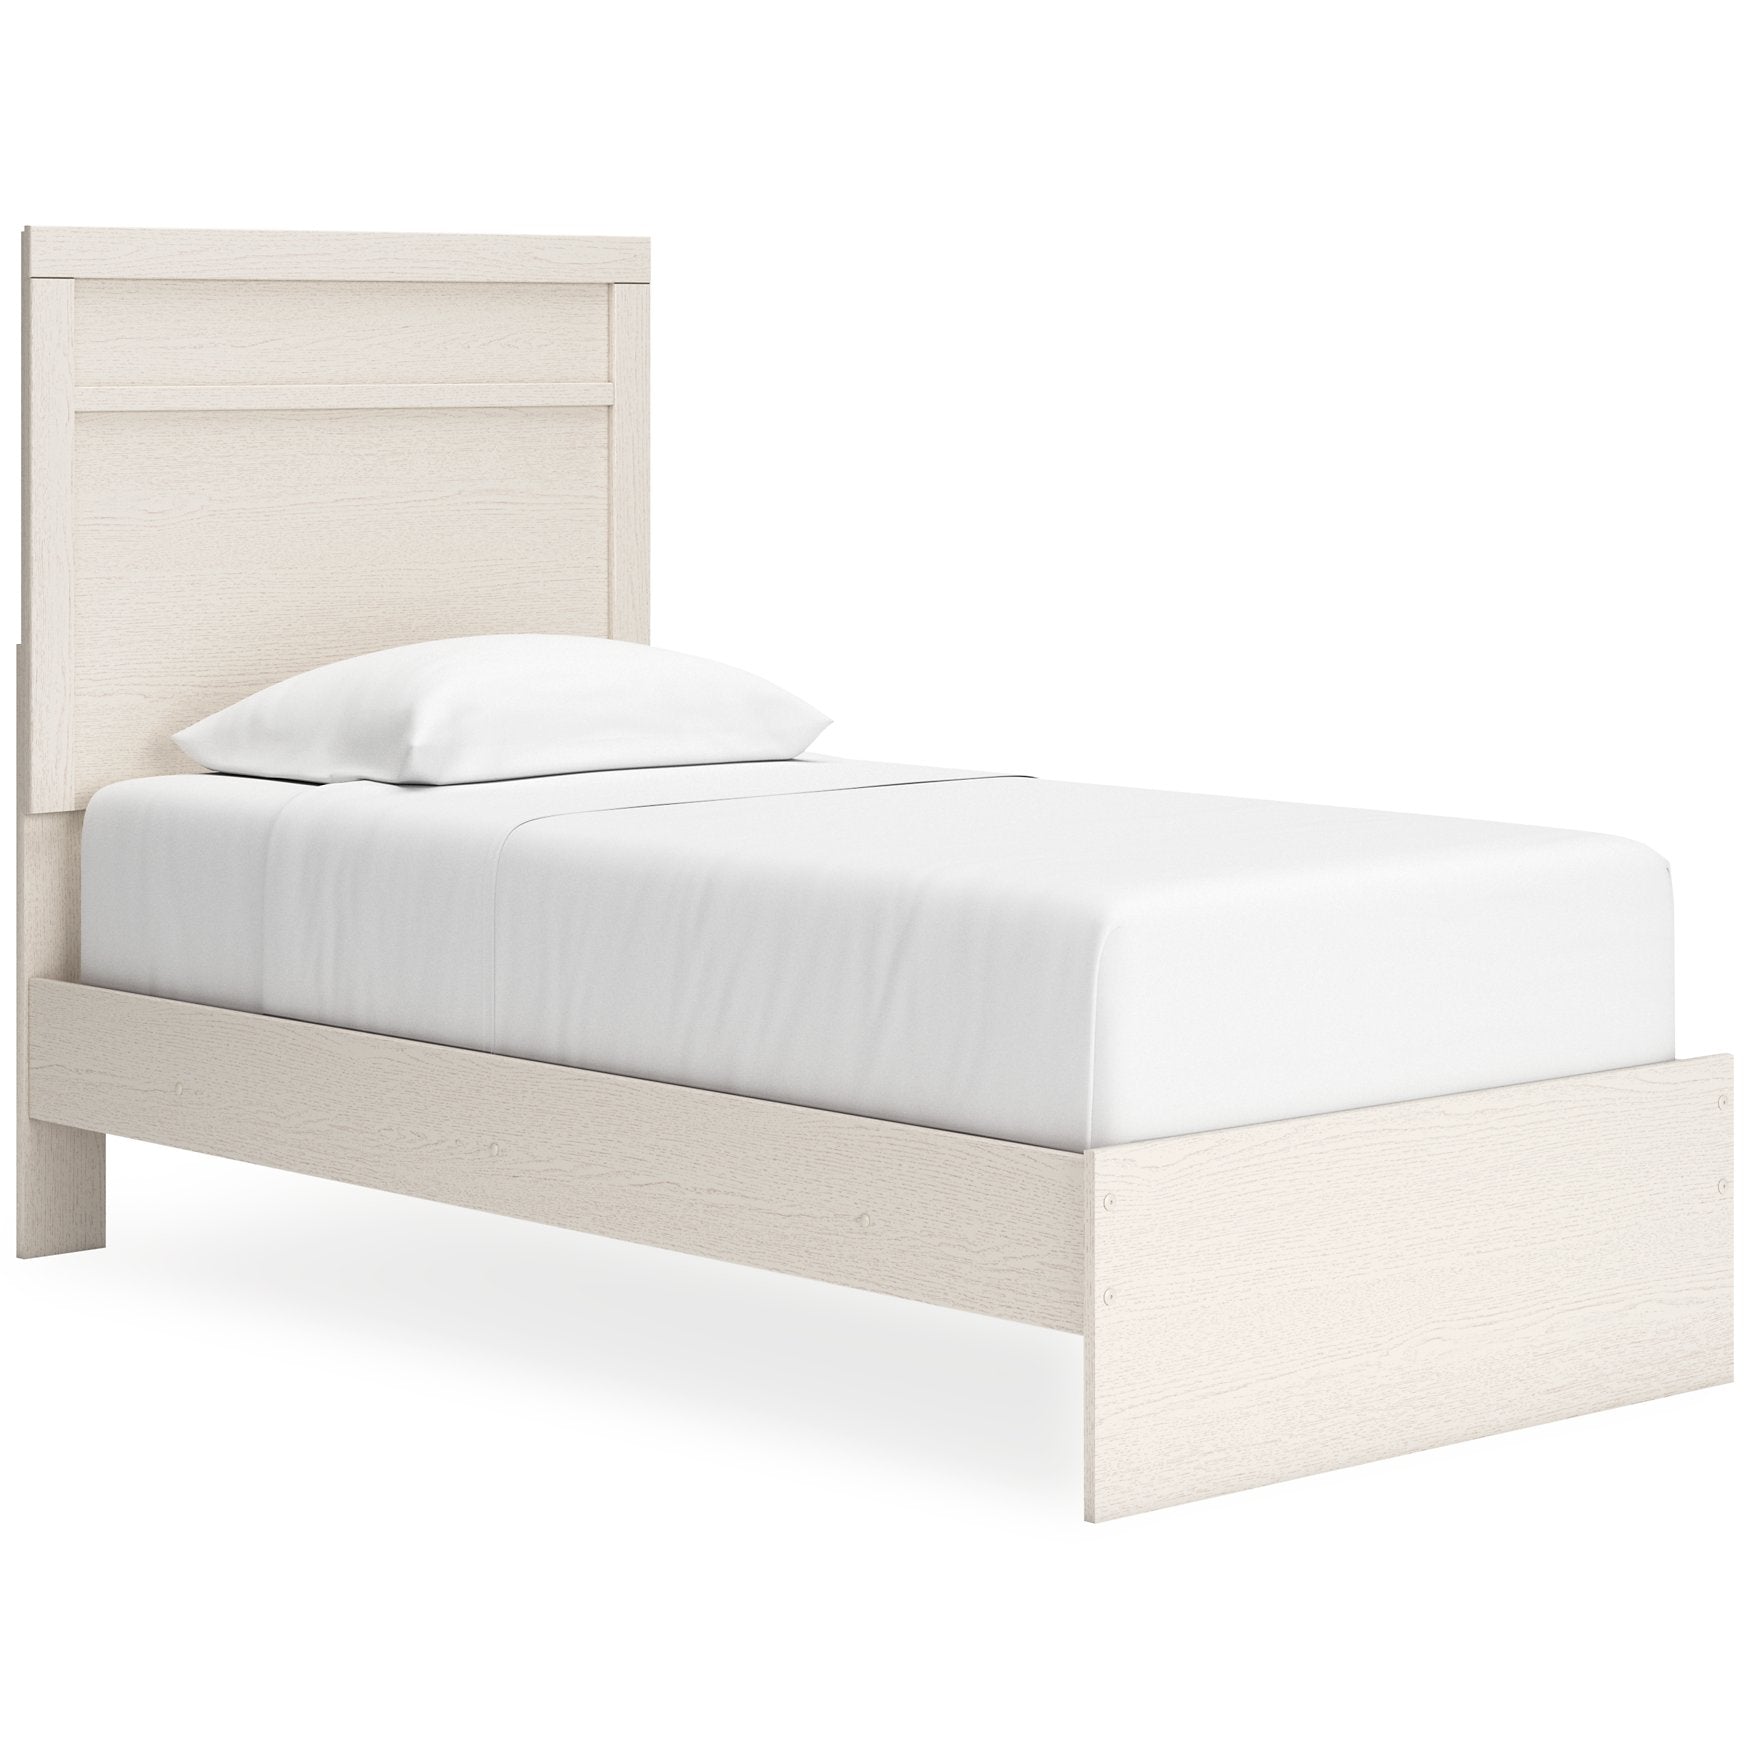 Stelsie Bed - Half Price Furniture